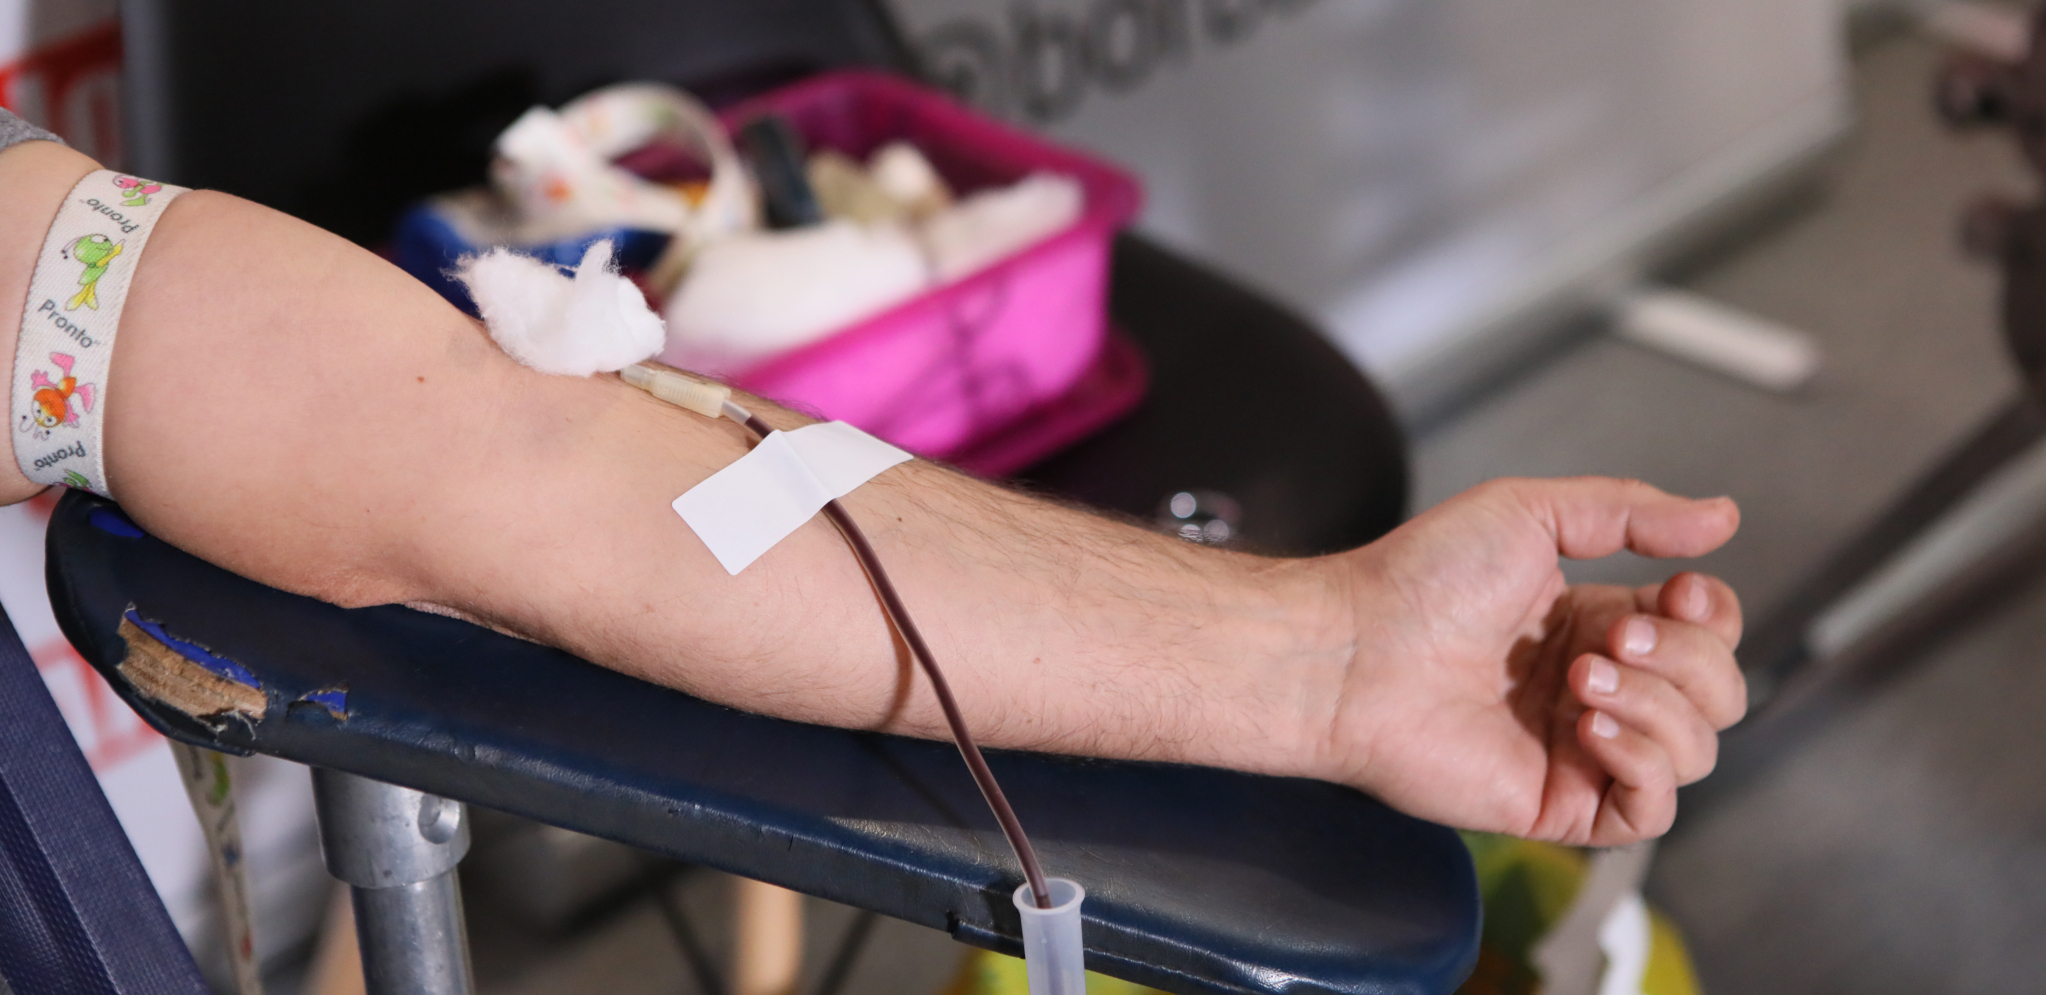 Nedostaju skoro sve krvne grupe, apel dobrovoljnim davaocima da se odazovu